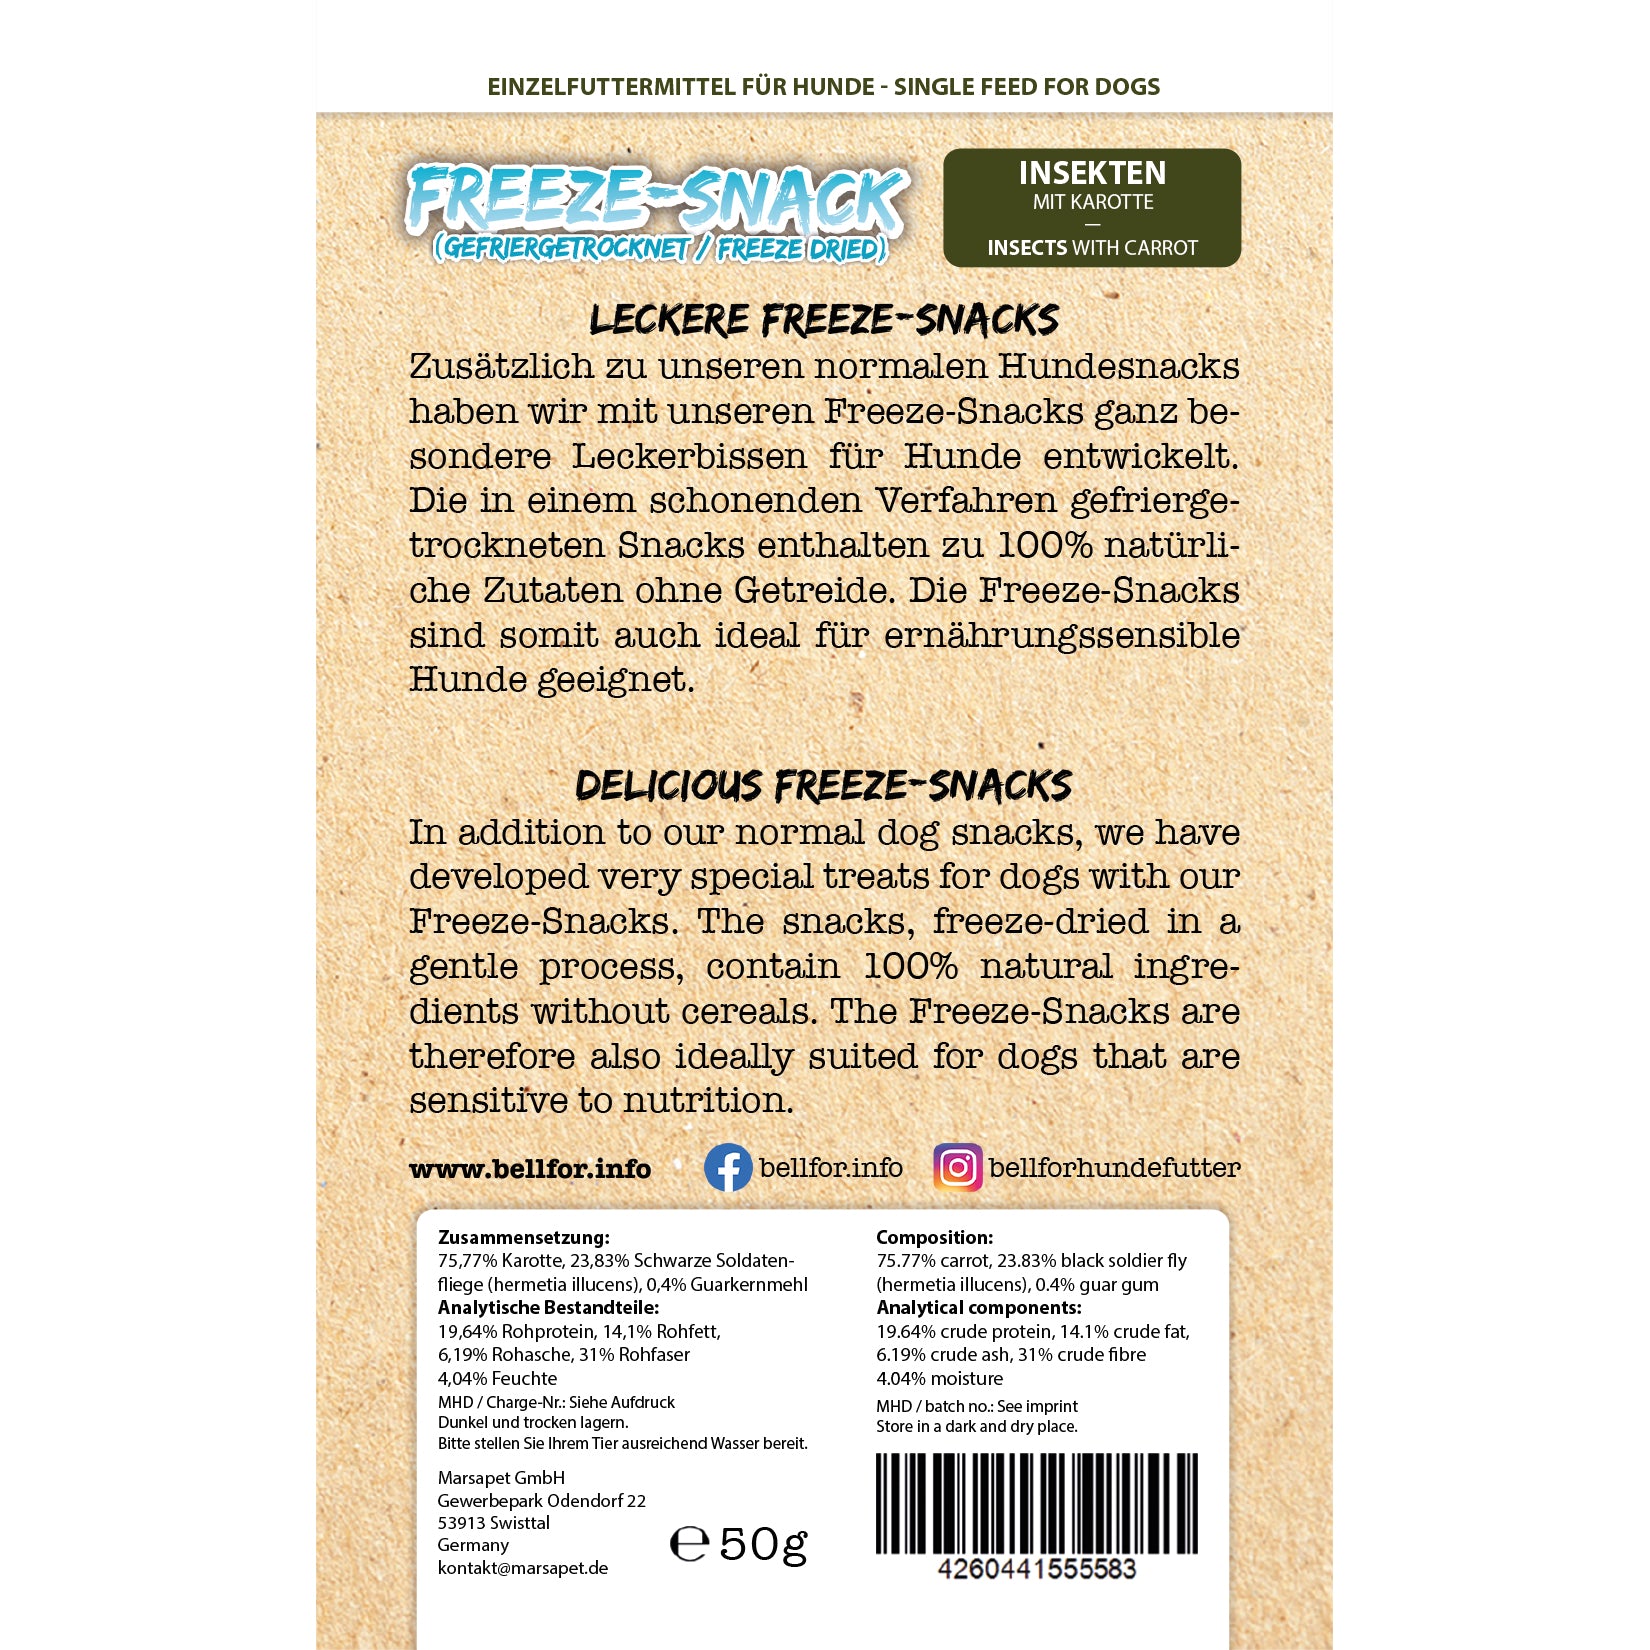 Freeze-Snack für Hunde - Insekten mit Karotte - 50g.